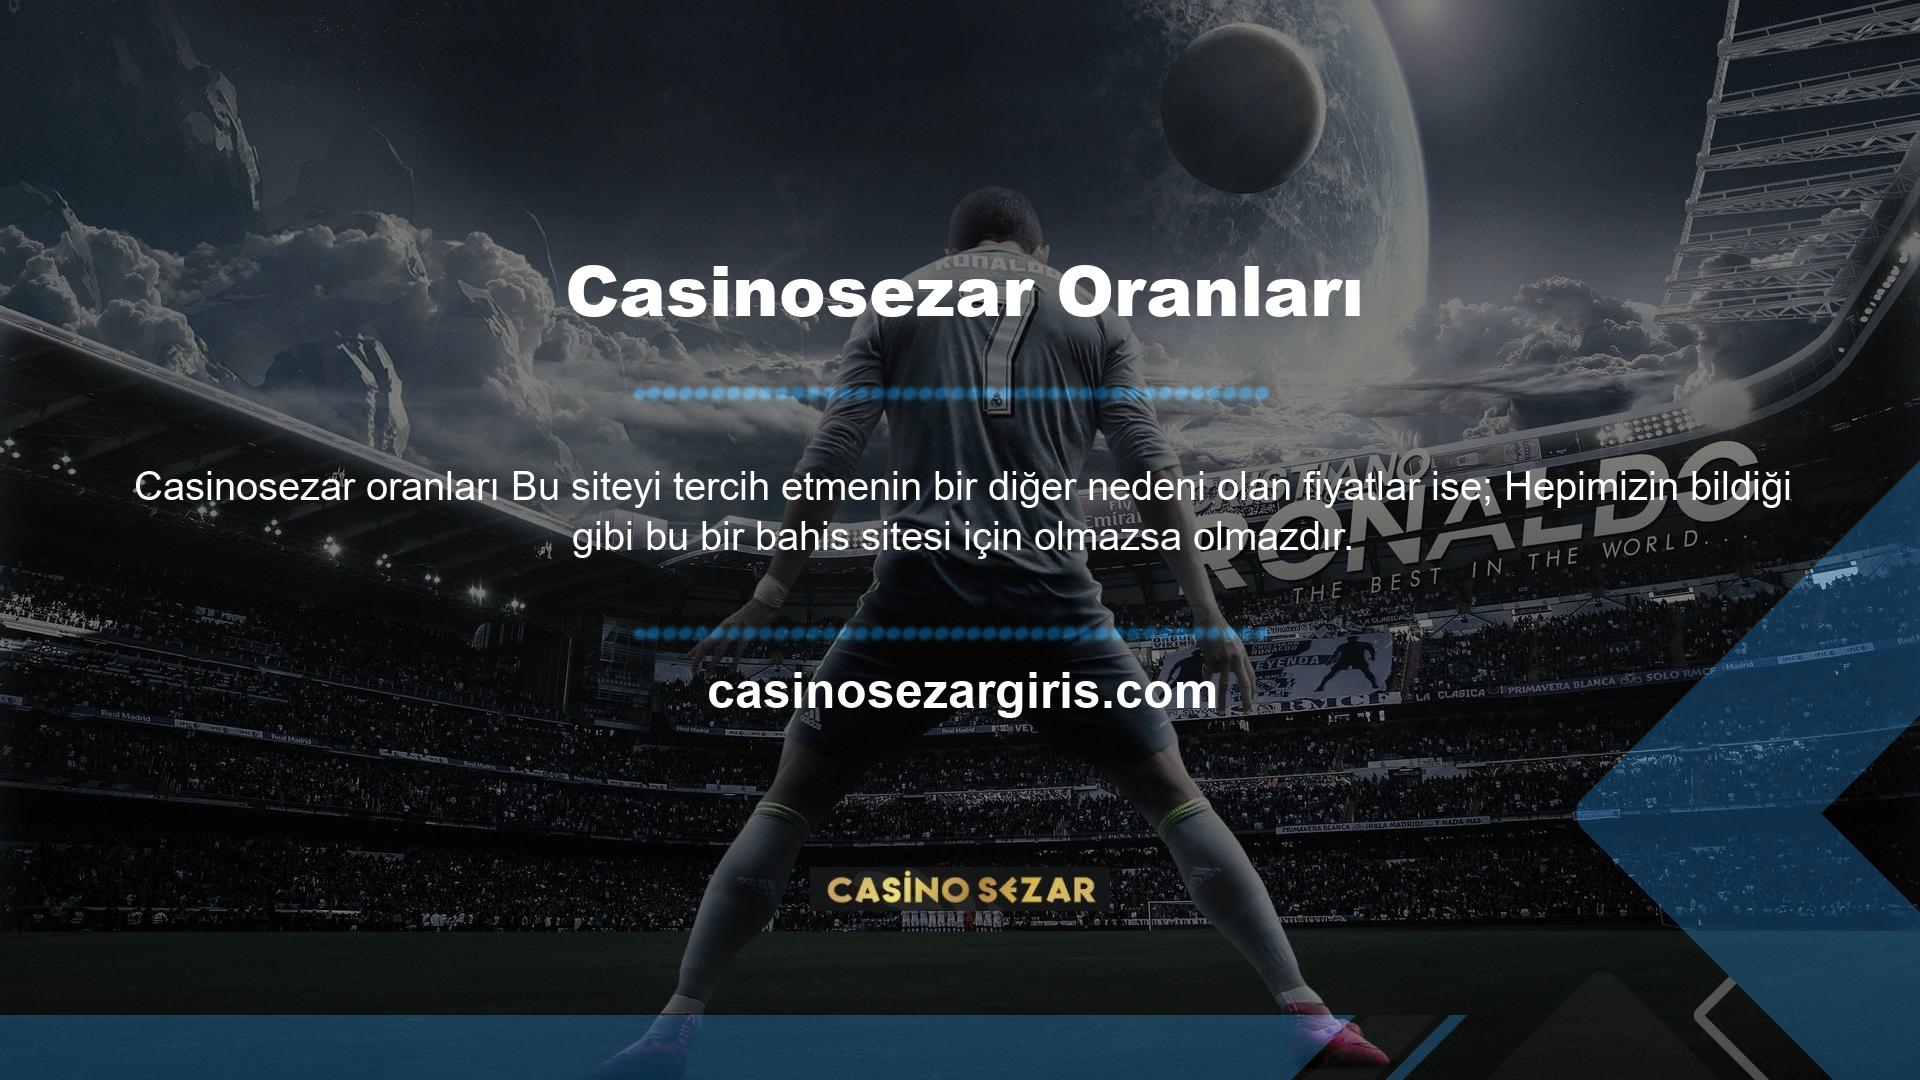 Casinosezar web sitesinde birçok yüksek oranlı oyun oynayabilirsiniz